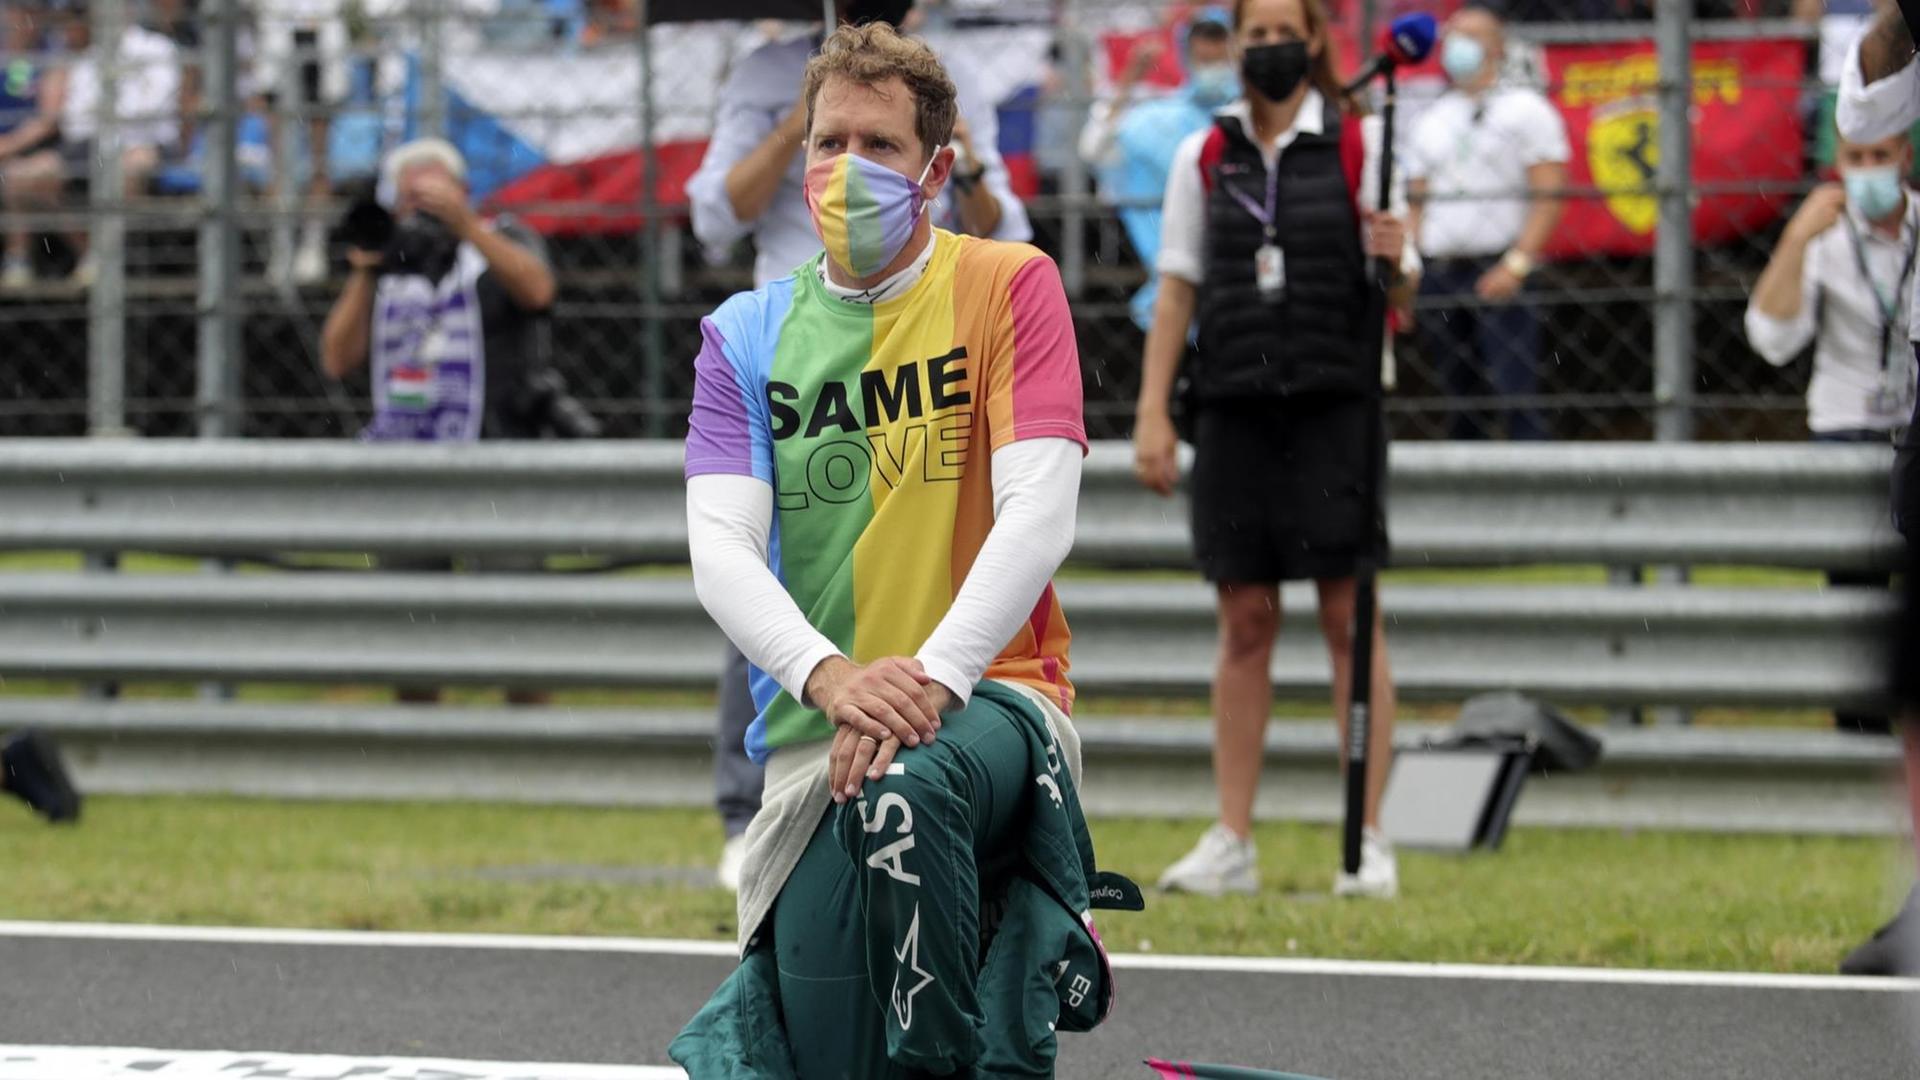 Ungarn, Mogyorod: Motorsport: Formel-1-Weltmeisterschaft, Großer Preis von Ungarn, Rennen: Sebastian Vettel aus Deutschland vom Team Aston-Martin kniet vor dem Rennen auf der Rennstrecke zur Unterstützung der Black-Lives-Matter-Bewegung nieder und trägt eine T-Shirt in Regenbogenfarben.